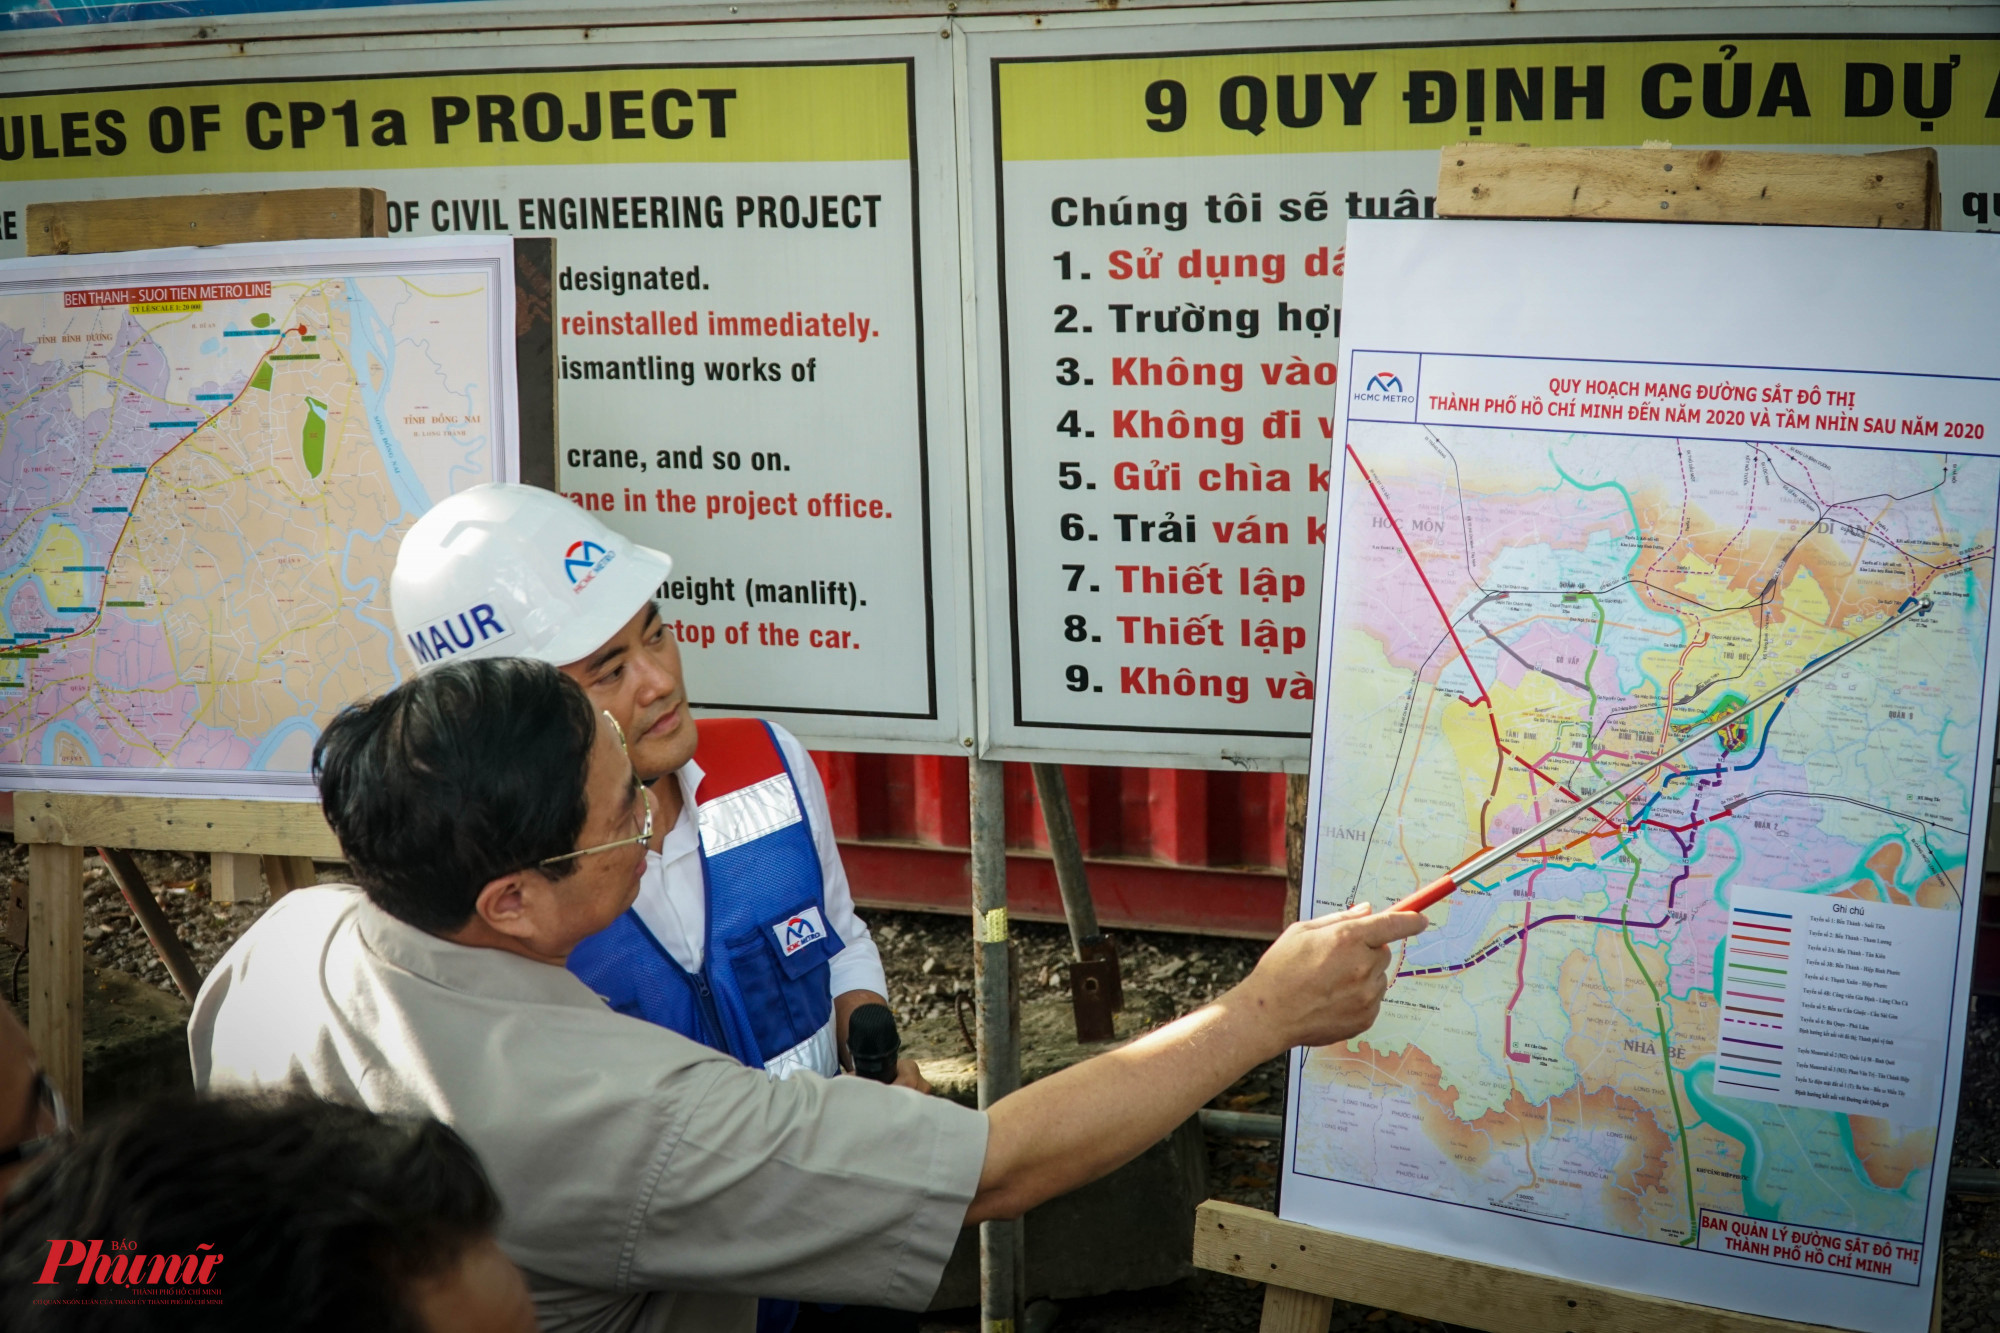 Thủ tướng Phạm Minh Chính chỉ đạo cần tập trung đẩy nhanh tiến độ để hoàn thành dự án này